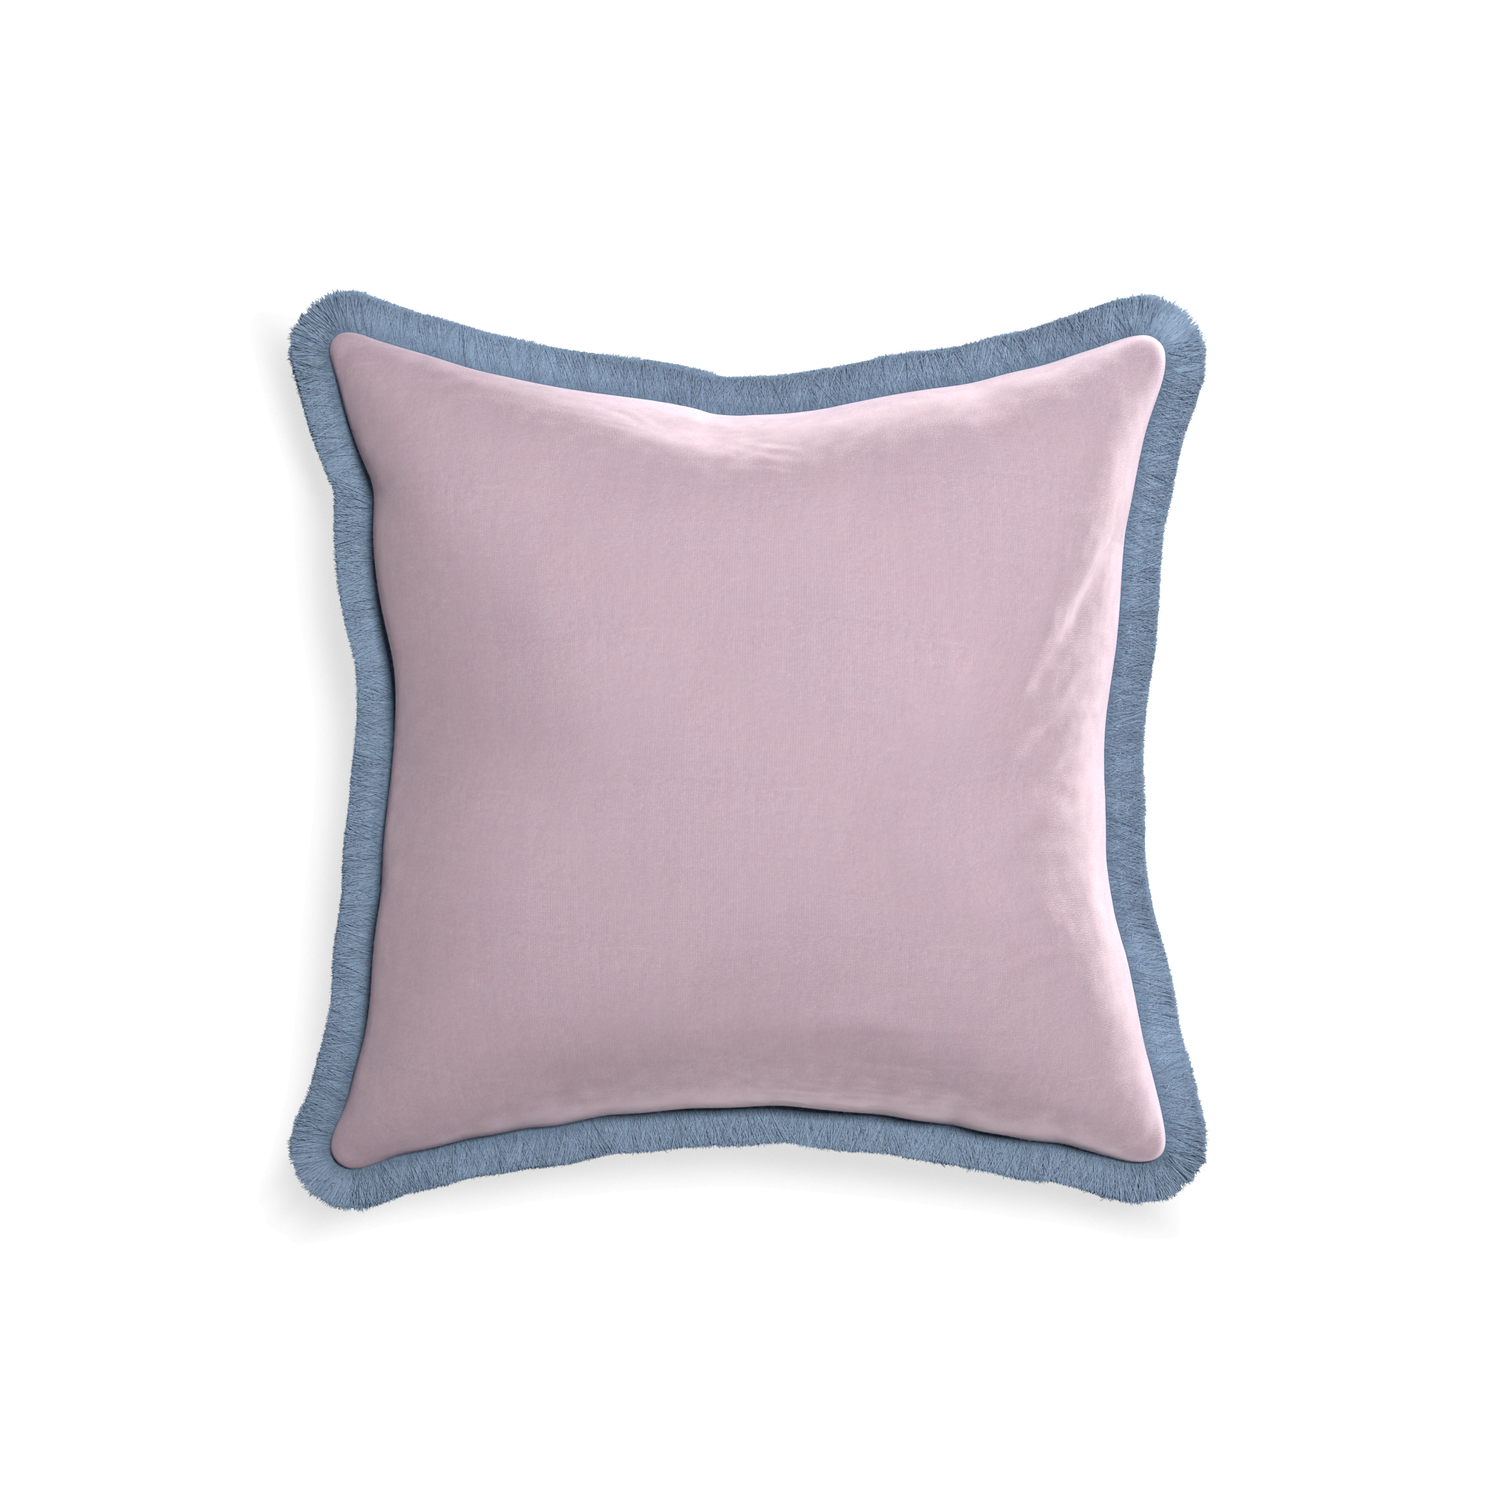 18-square lilac velvet custom pillow with sky fringe on white background